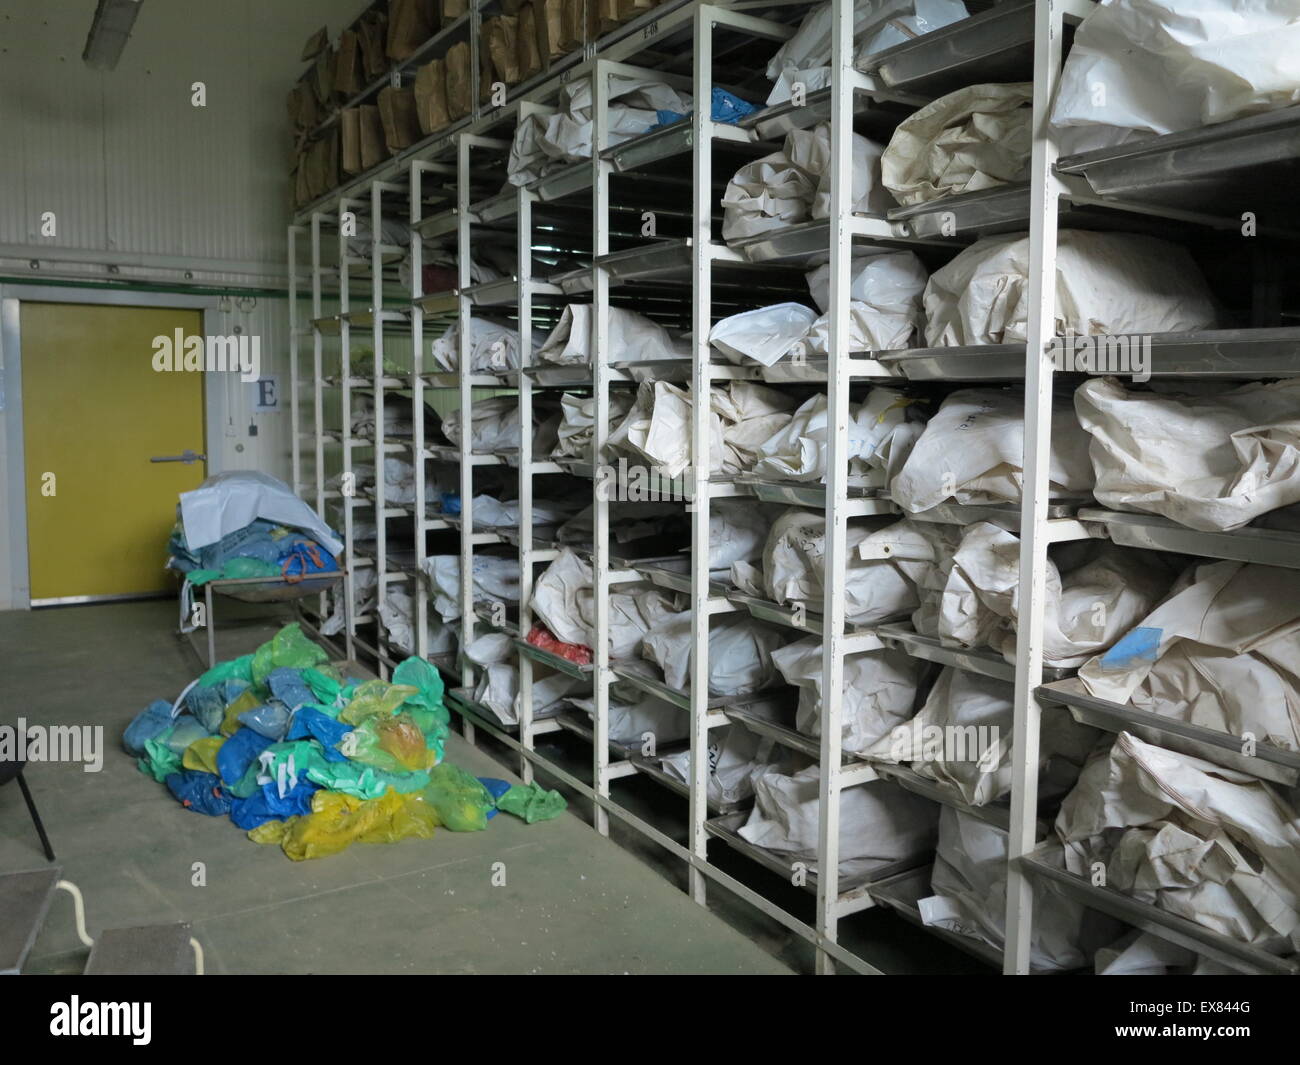 Hunderte von Plastiktüten mit Körperteilen von Opfern des Massakers von Srebrenica 1995 Lagern in einem Kühlraum des Zentrums Identifikation in Tuzla, Bosnien und Herzegowina, 16. Juni 2015. Die sterblichen Überreste der Opfer wurden exhumiert und werden durch abgestimmt auf DNA-Proben von Verwandten identifiziert werden. Foto: Thomas Brey/dpa Stockfoto